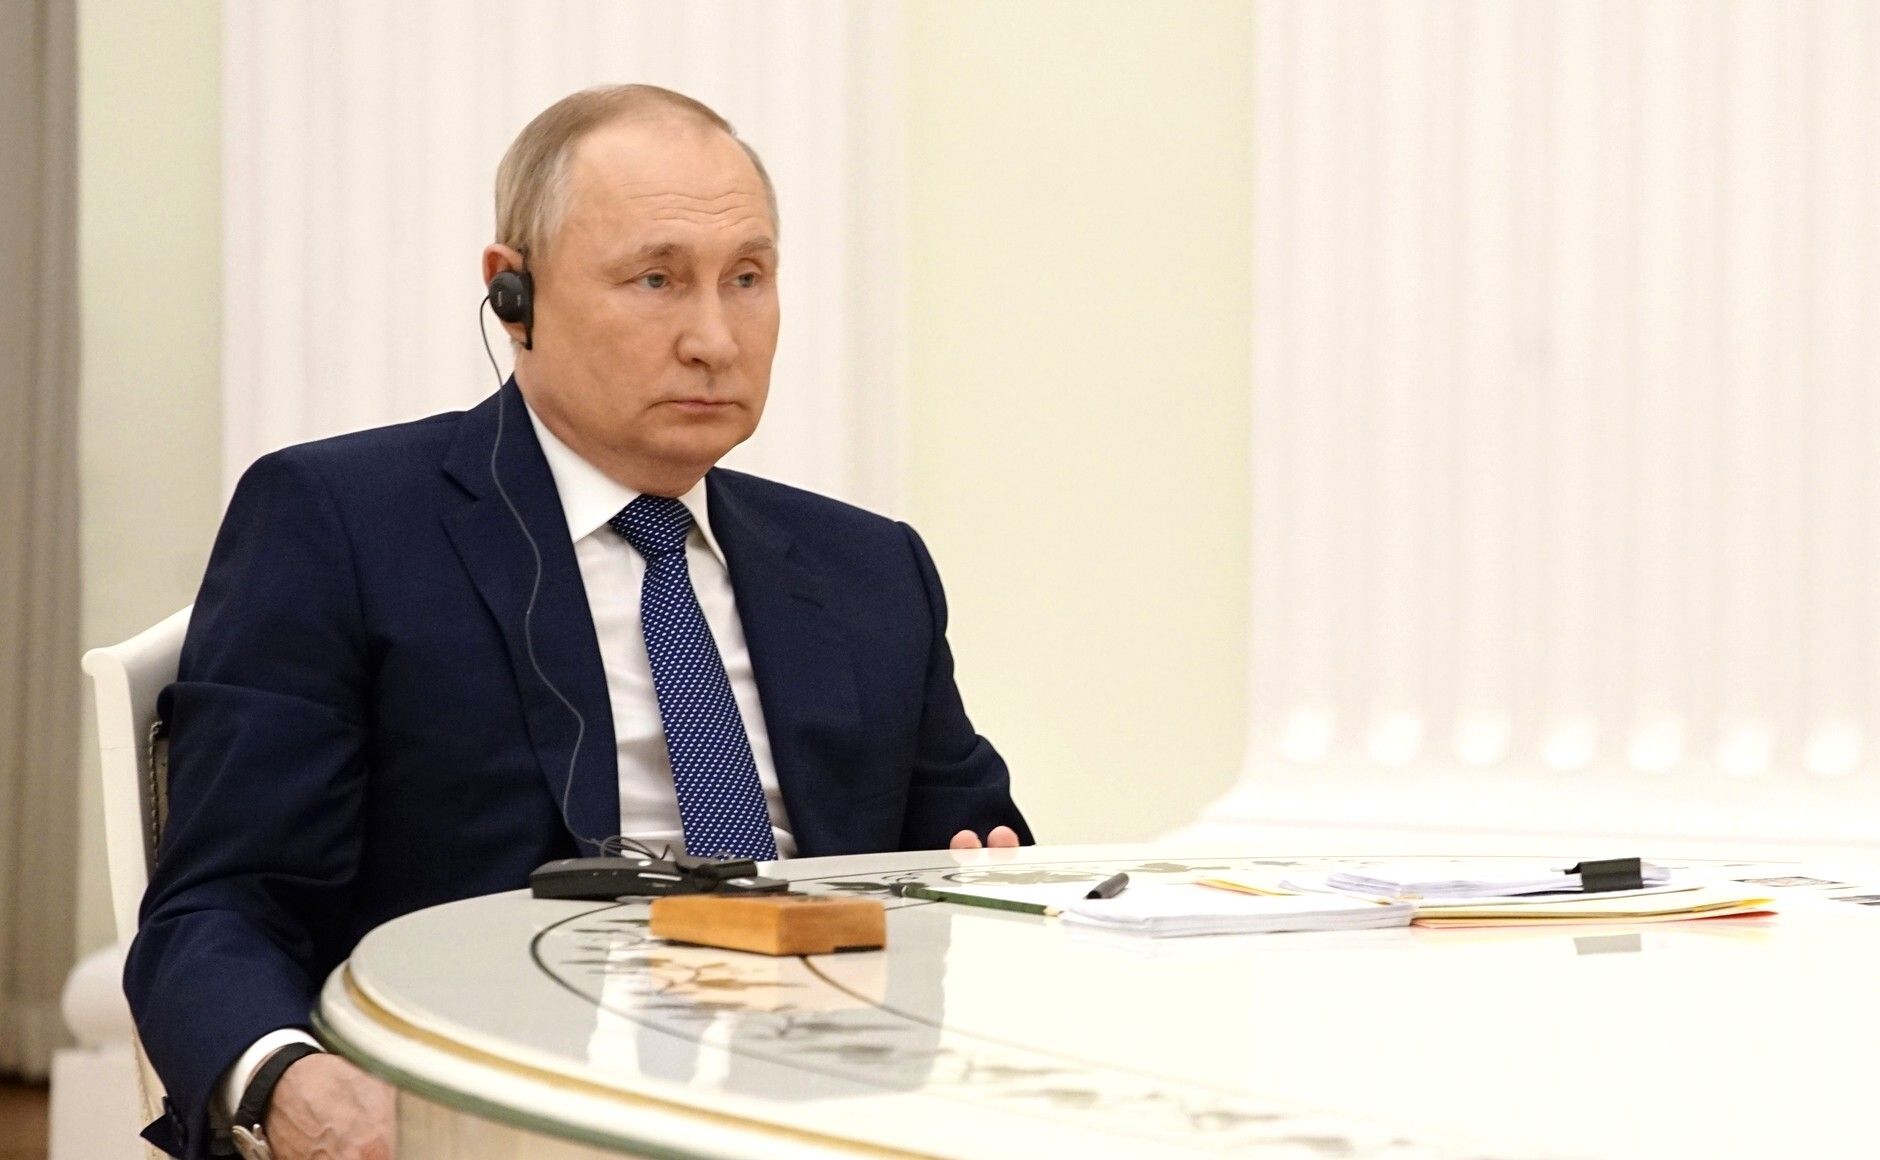 Зачем Путин расшатывает ситуацию в мире - что может остановить президента России - 24 Канал